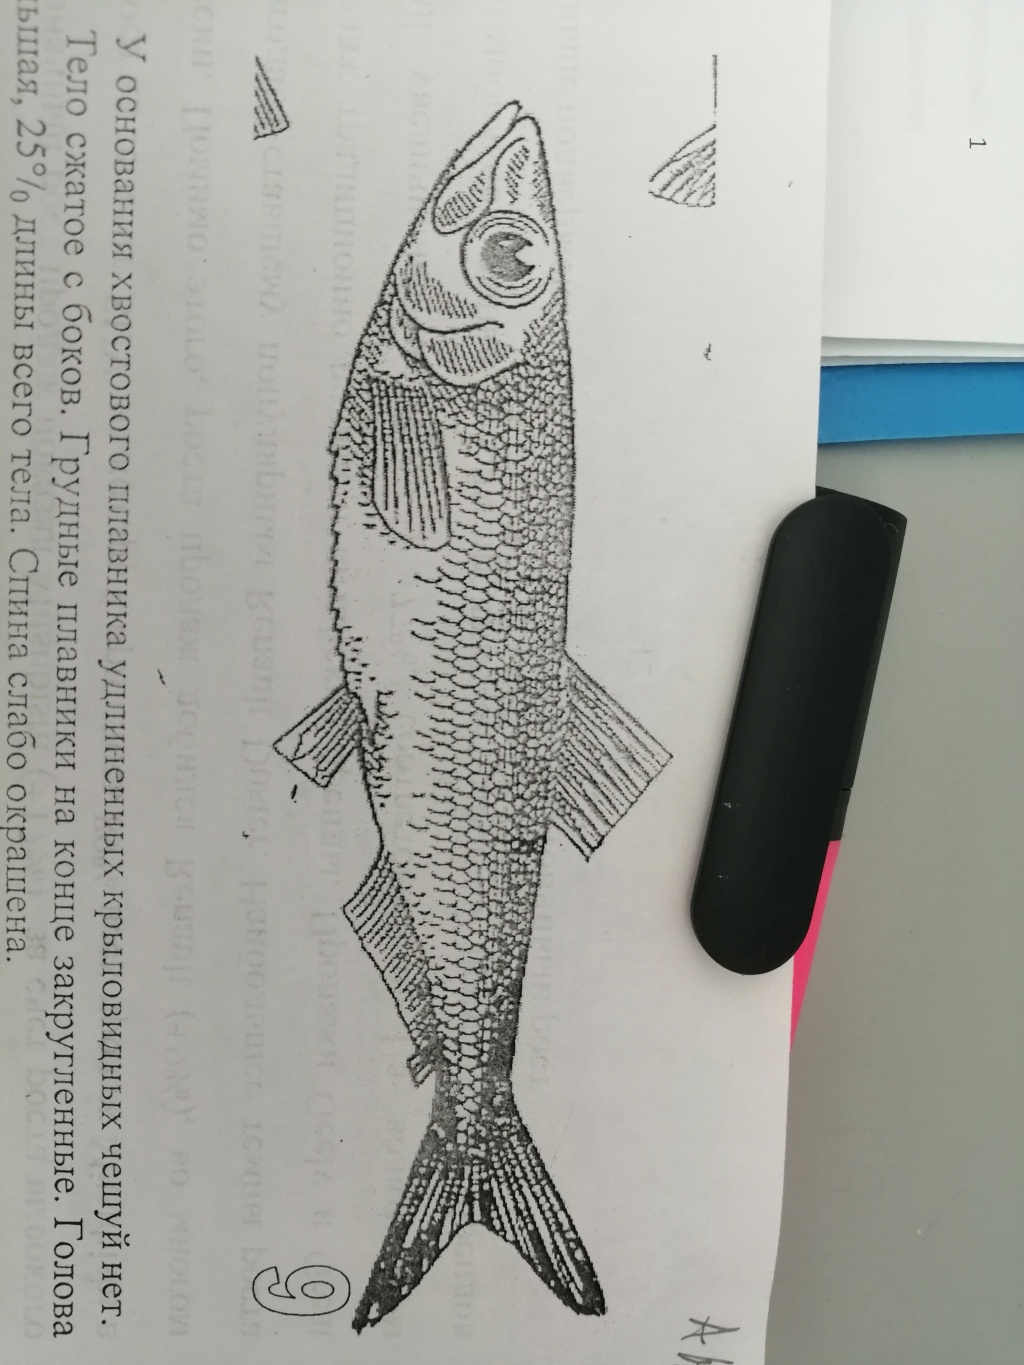 фото рыбы